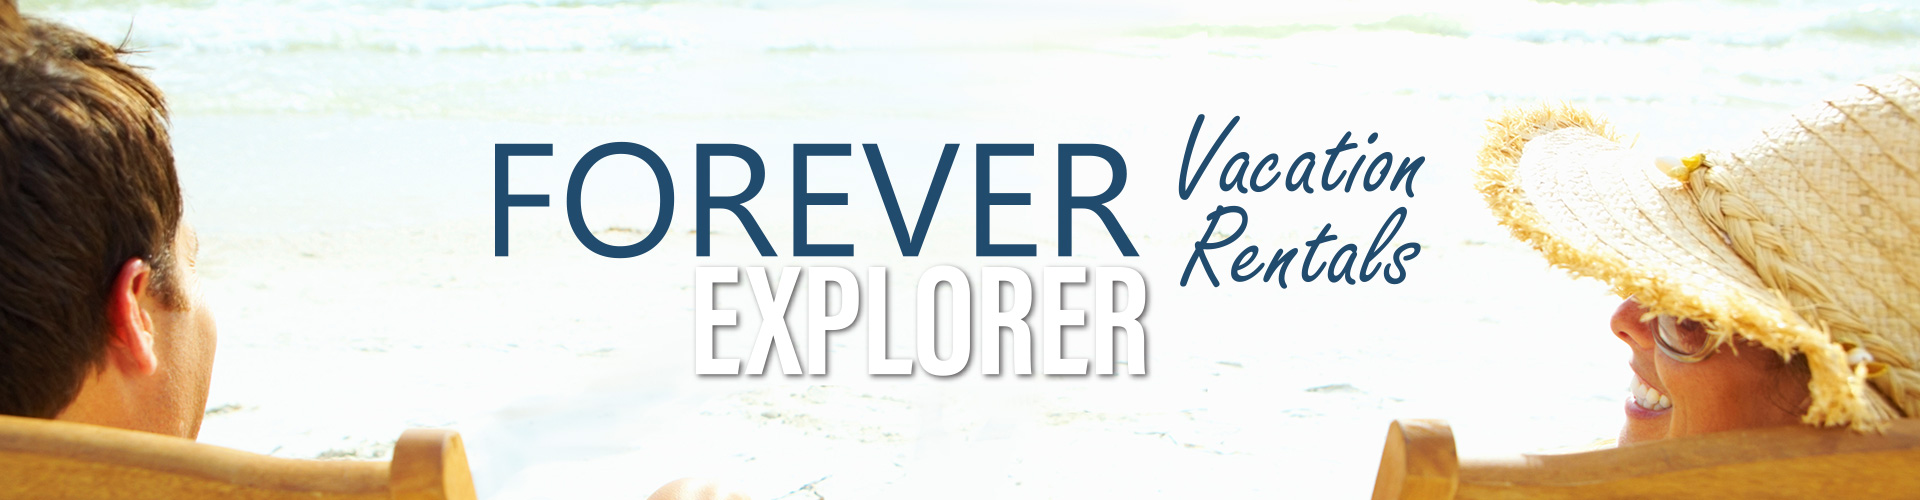 Forever Vacation Rentals Explorer Banner